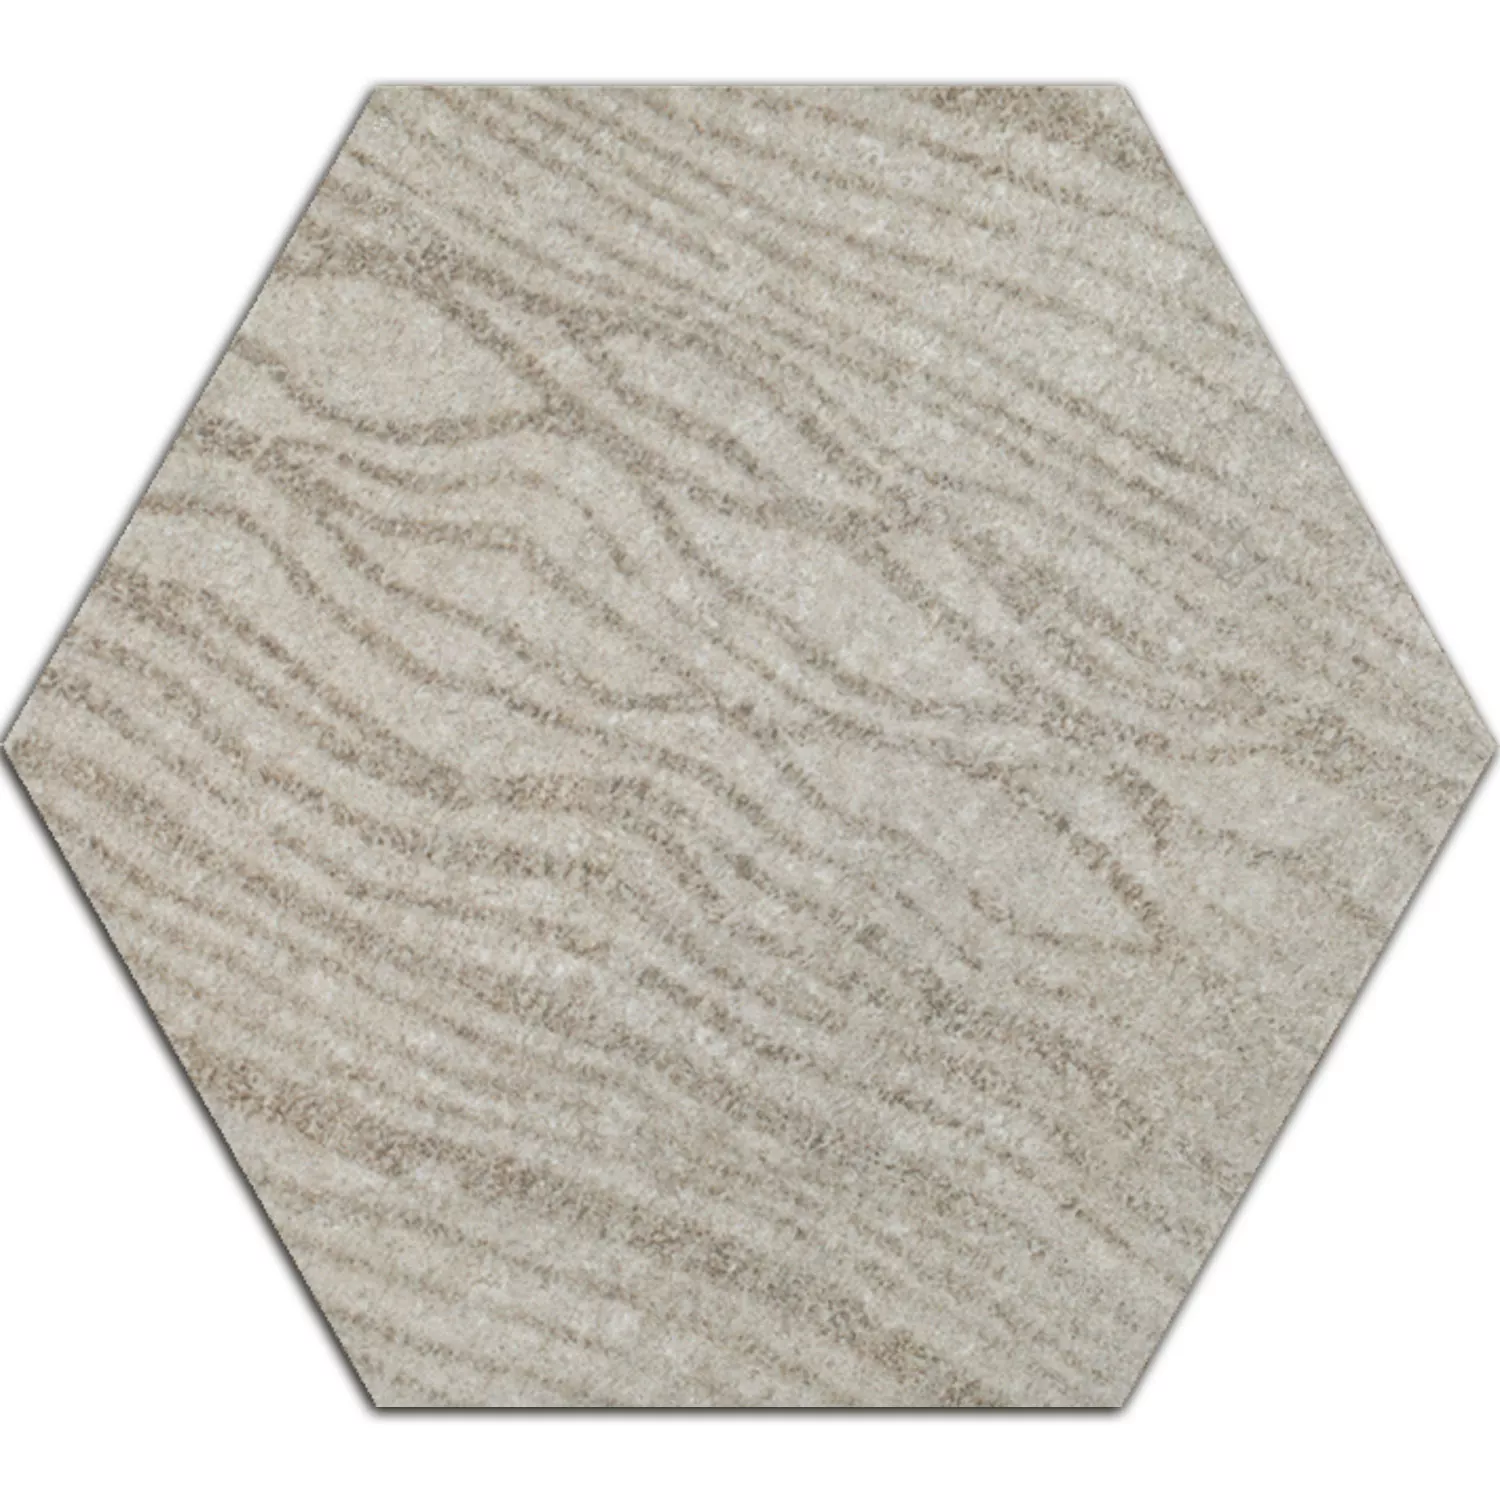 Cement Tiles Optic Decor Hexagon Atlanta Grey